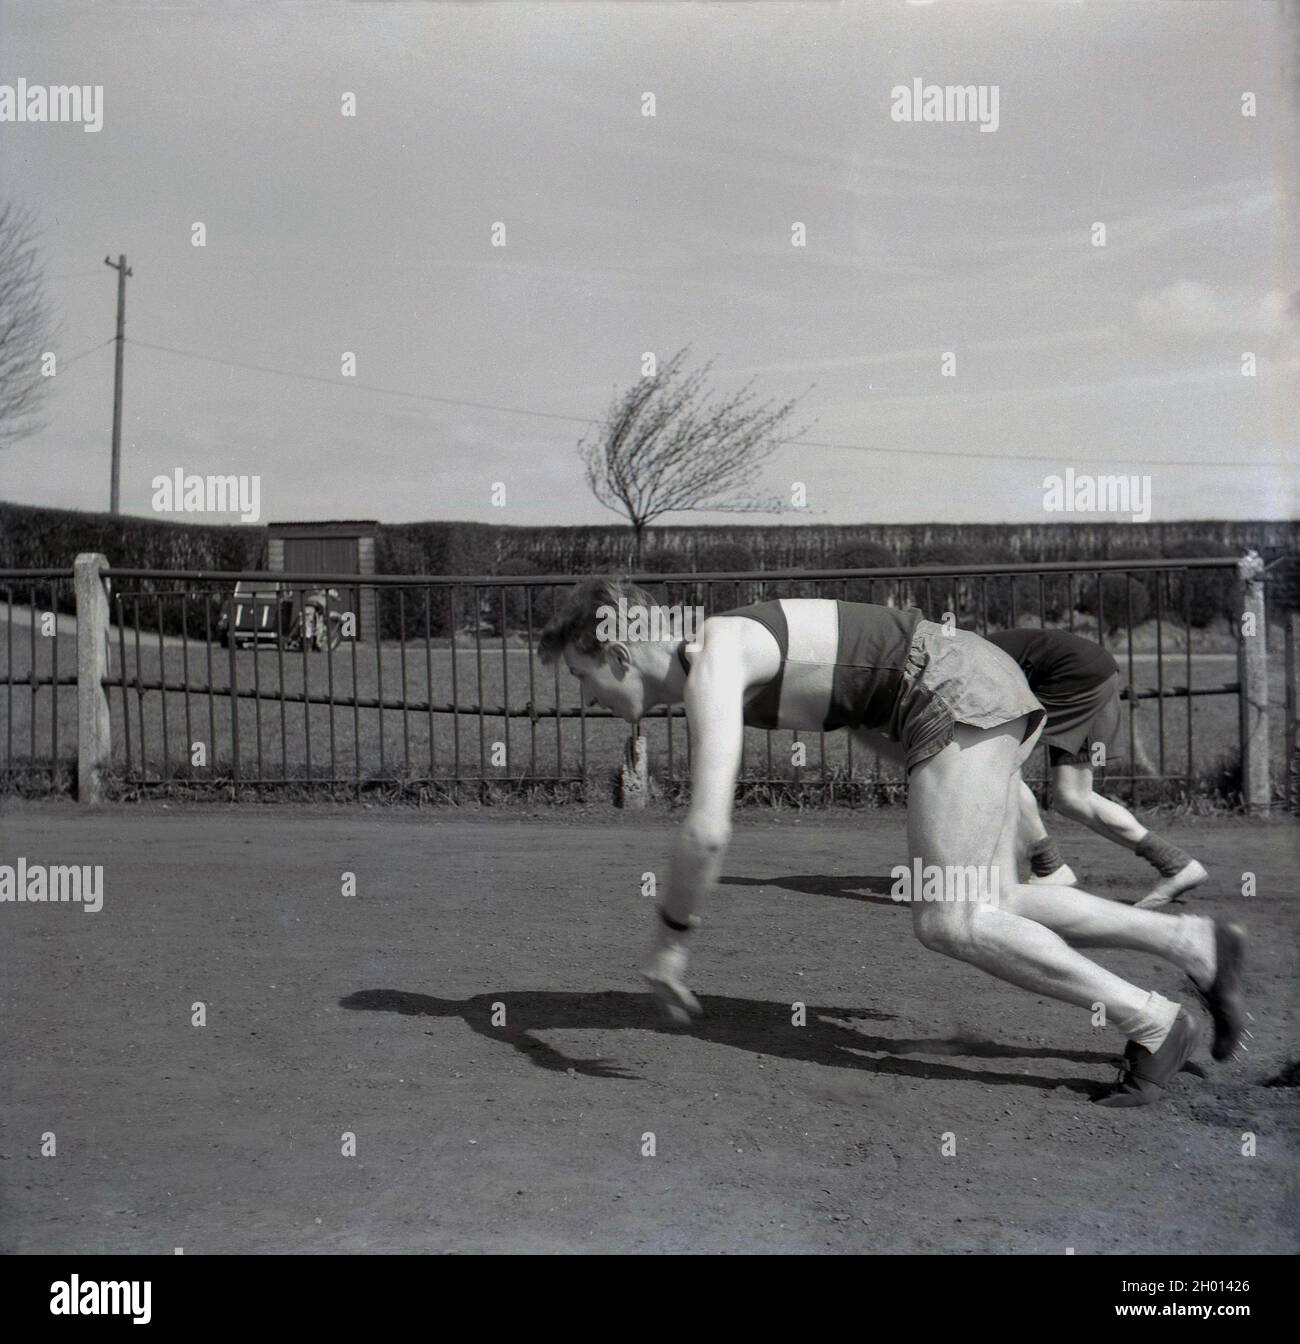 1960, historisch, draußen auf einem Seitengrasgelände an einem Zaun auf einem Sportplatz, ein junger erwachsener männlicher Athlet in Weste, kurz- und Sportschuhen, möglicherweise ein Sprinter, in einer hockigen Position, der seinen Start praktiziert, England, Großbritannien. Stockfoto